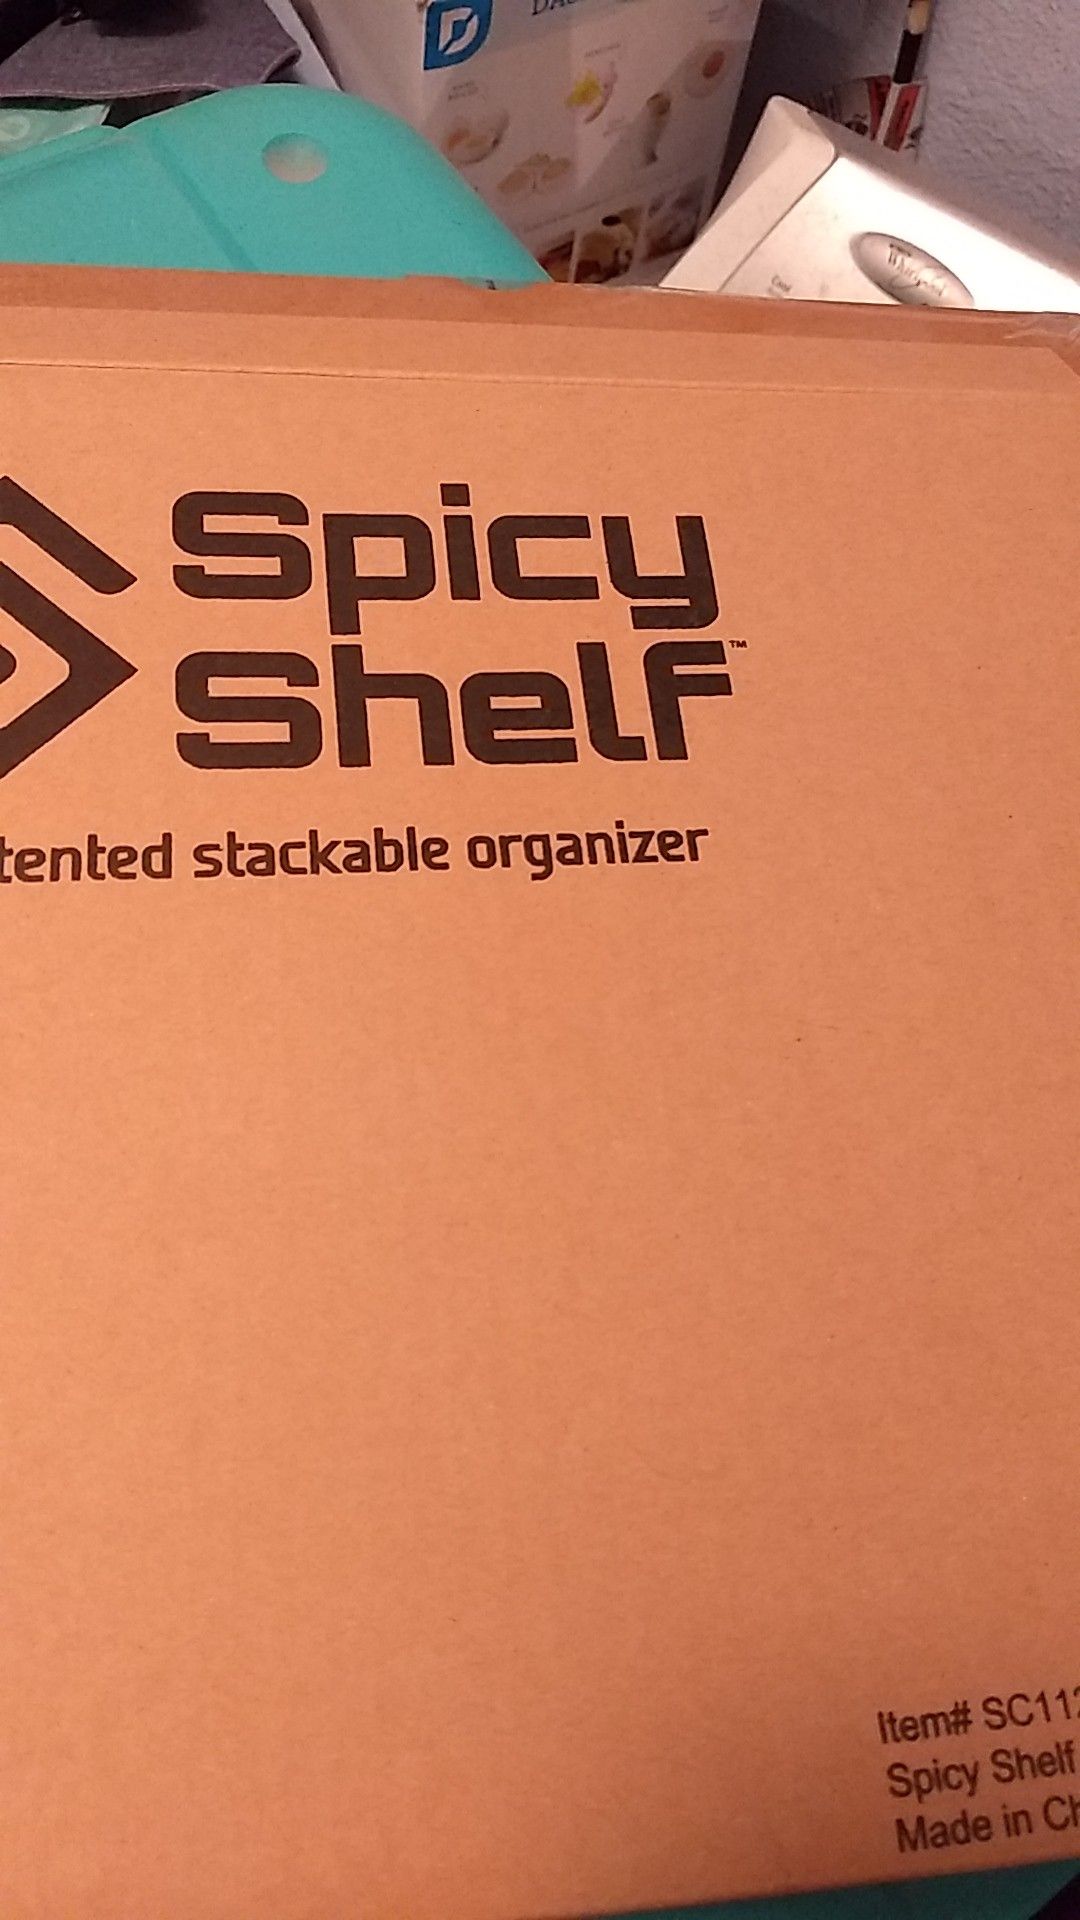 Spicy shelf organizer